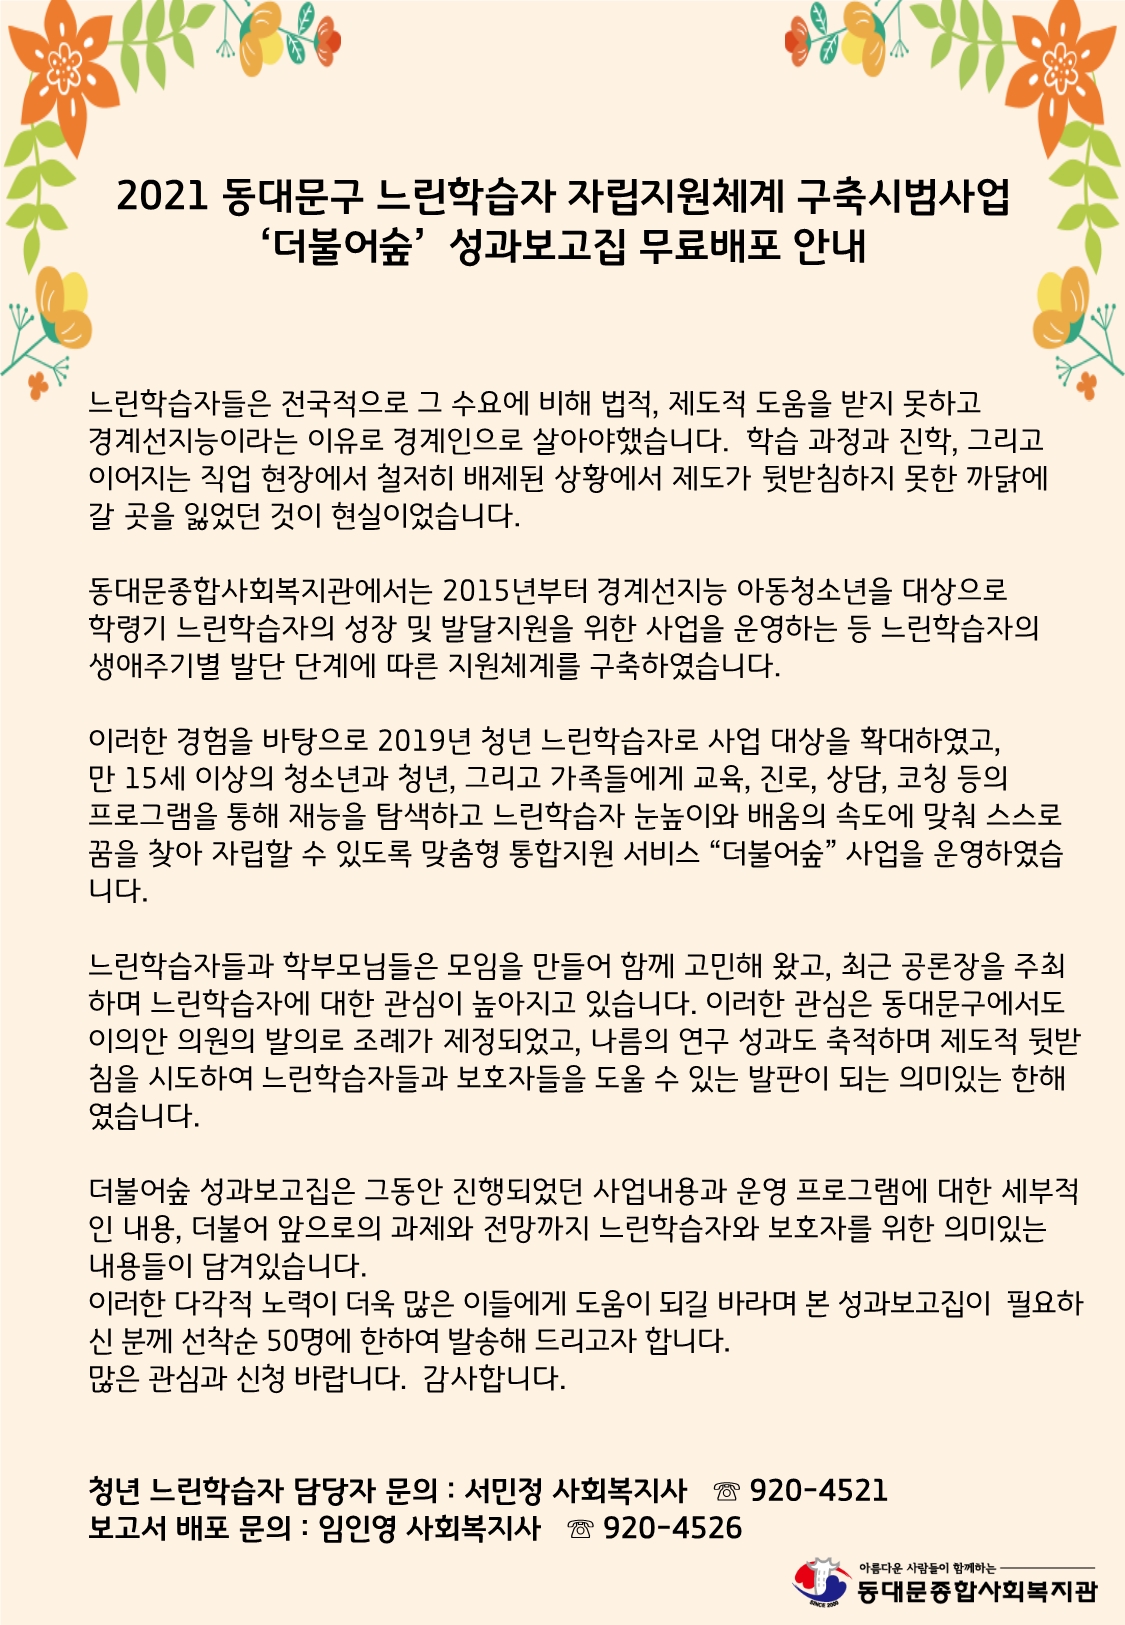 동대문종합사회복지관_더불어숲 성과보고집 무료배포안내.jpg